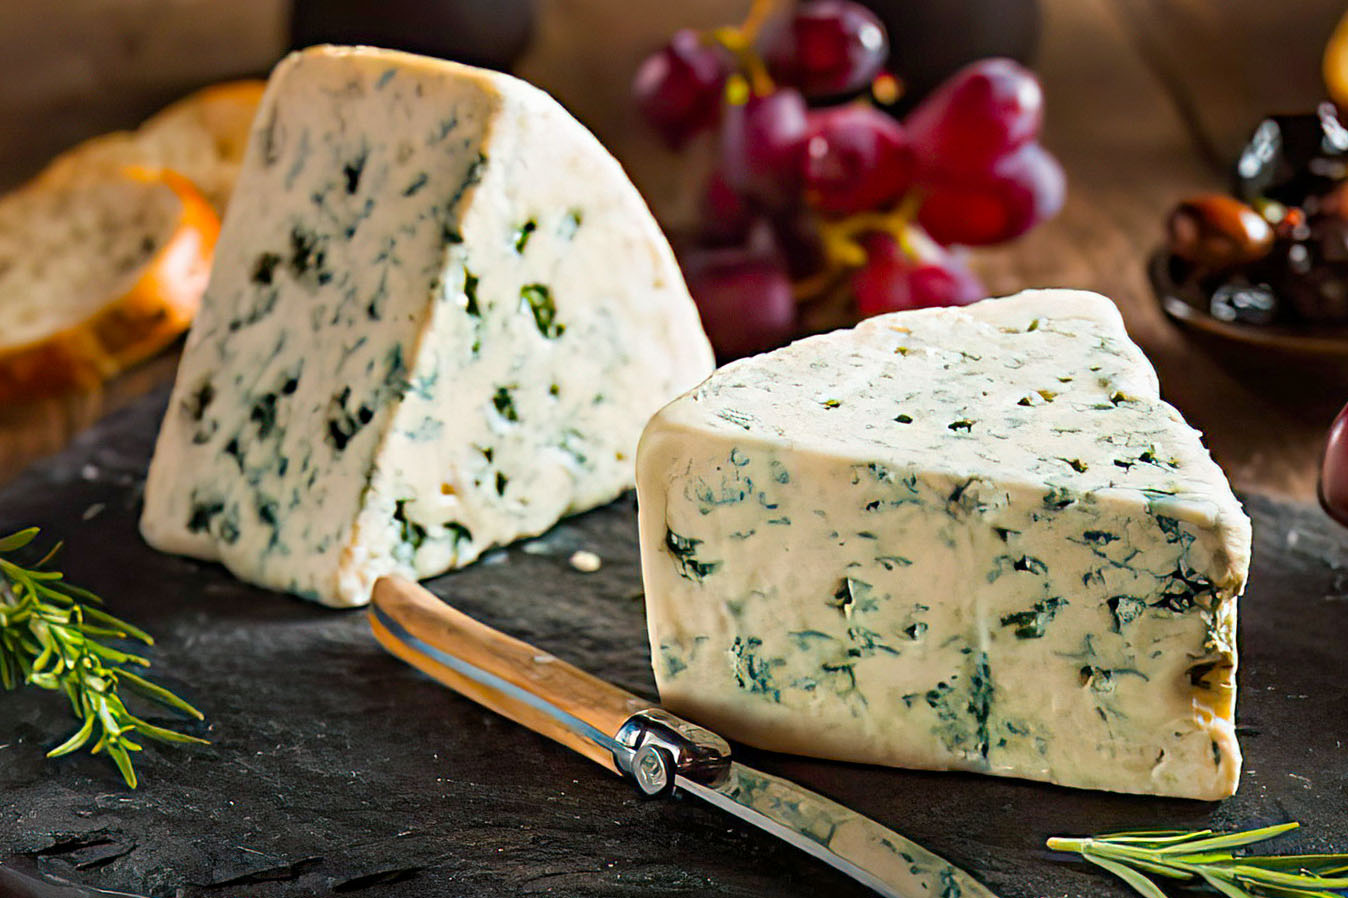 Сыр горгонзола с голубой плесенью фото